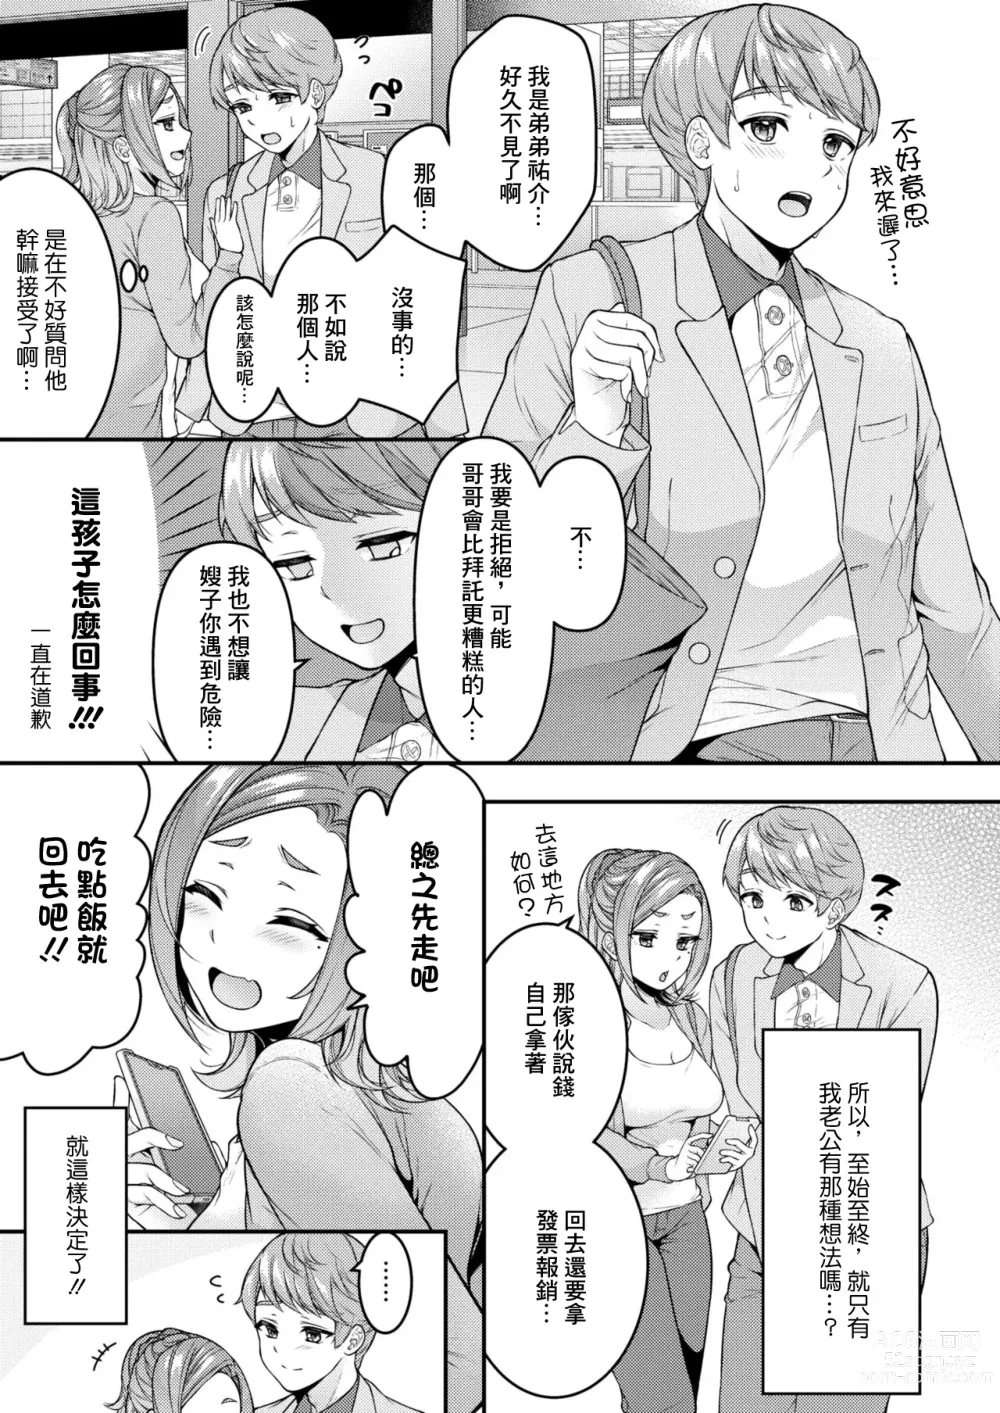 Page 5 of manga Danna to Shitai dake nanoni...